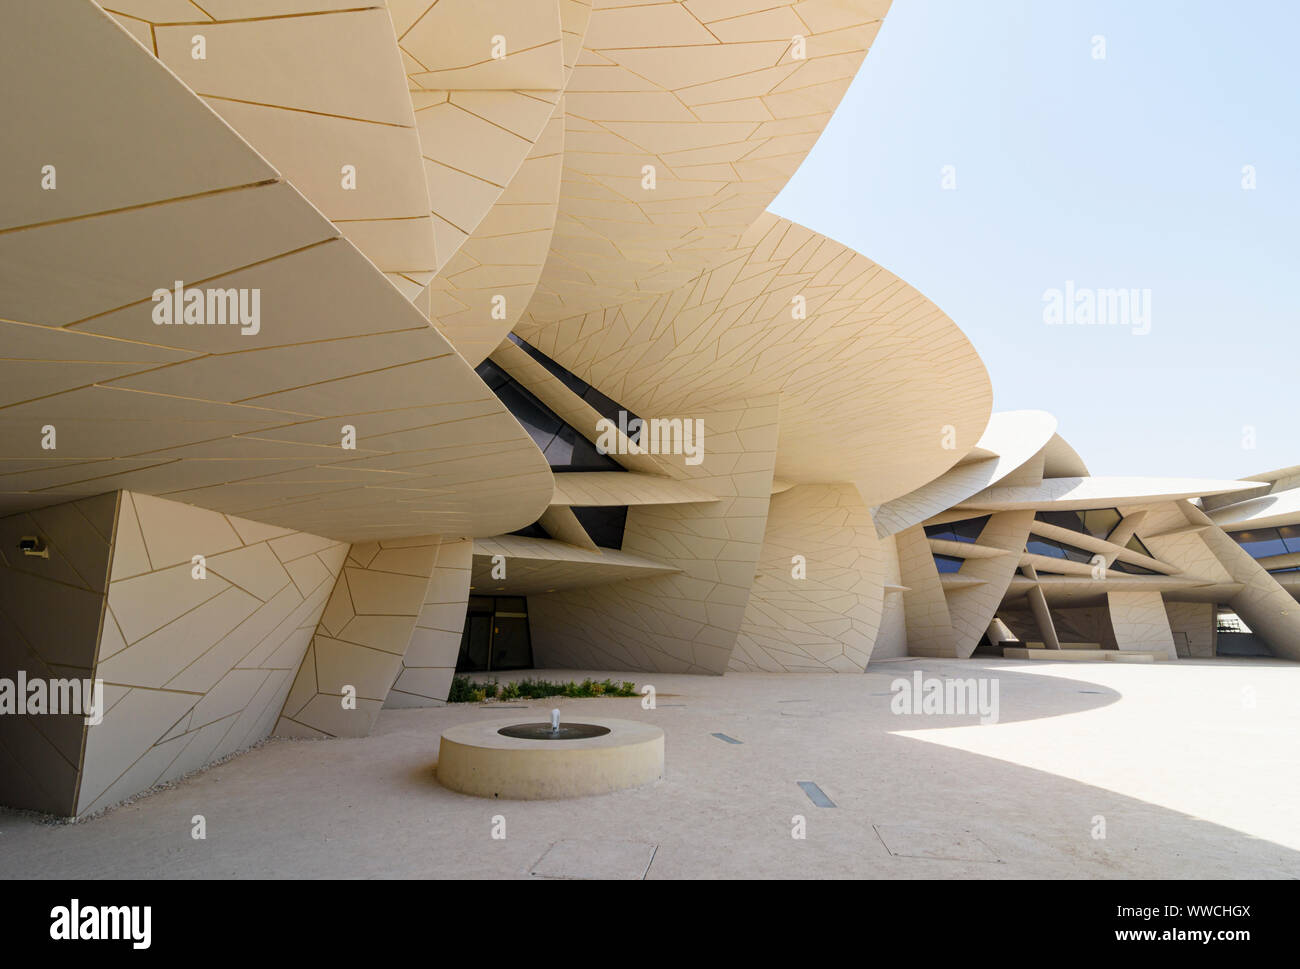 Le desert rose inspiré de repère architectural le Musée national du Qatar, Doha, Qatar Banque D'Images